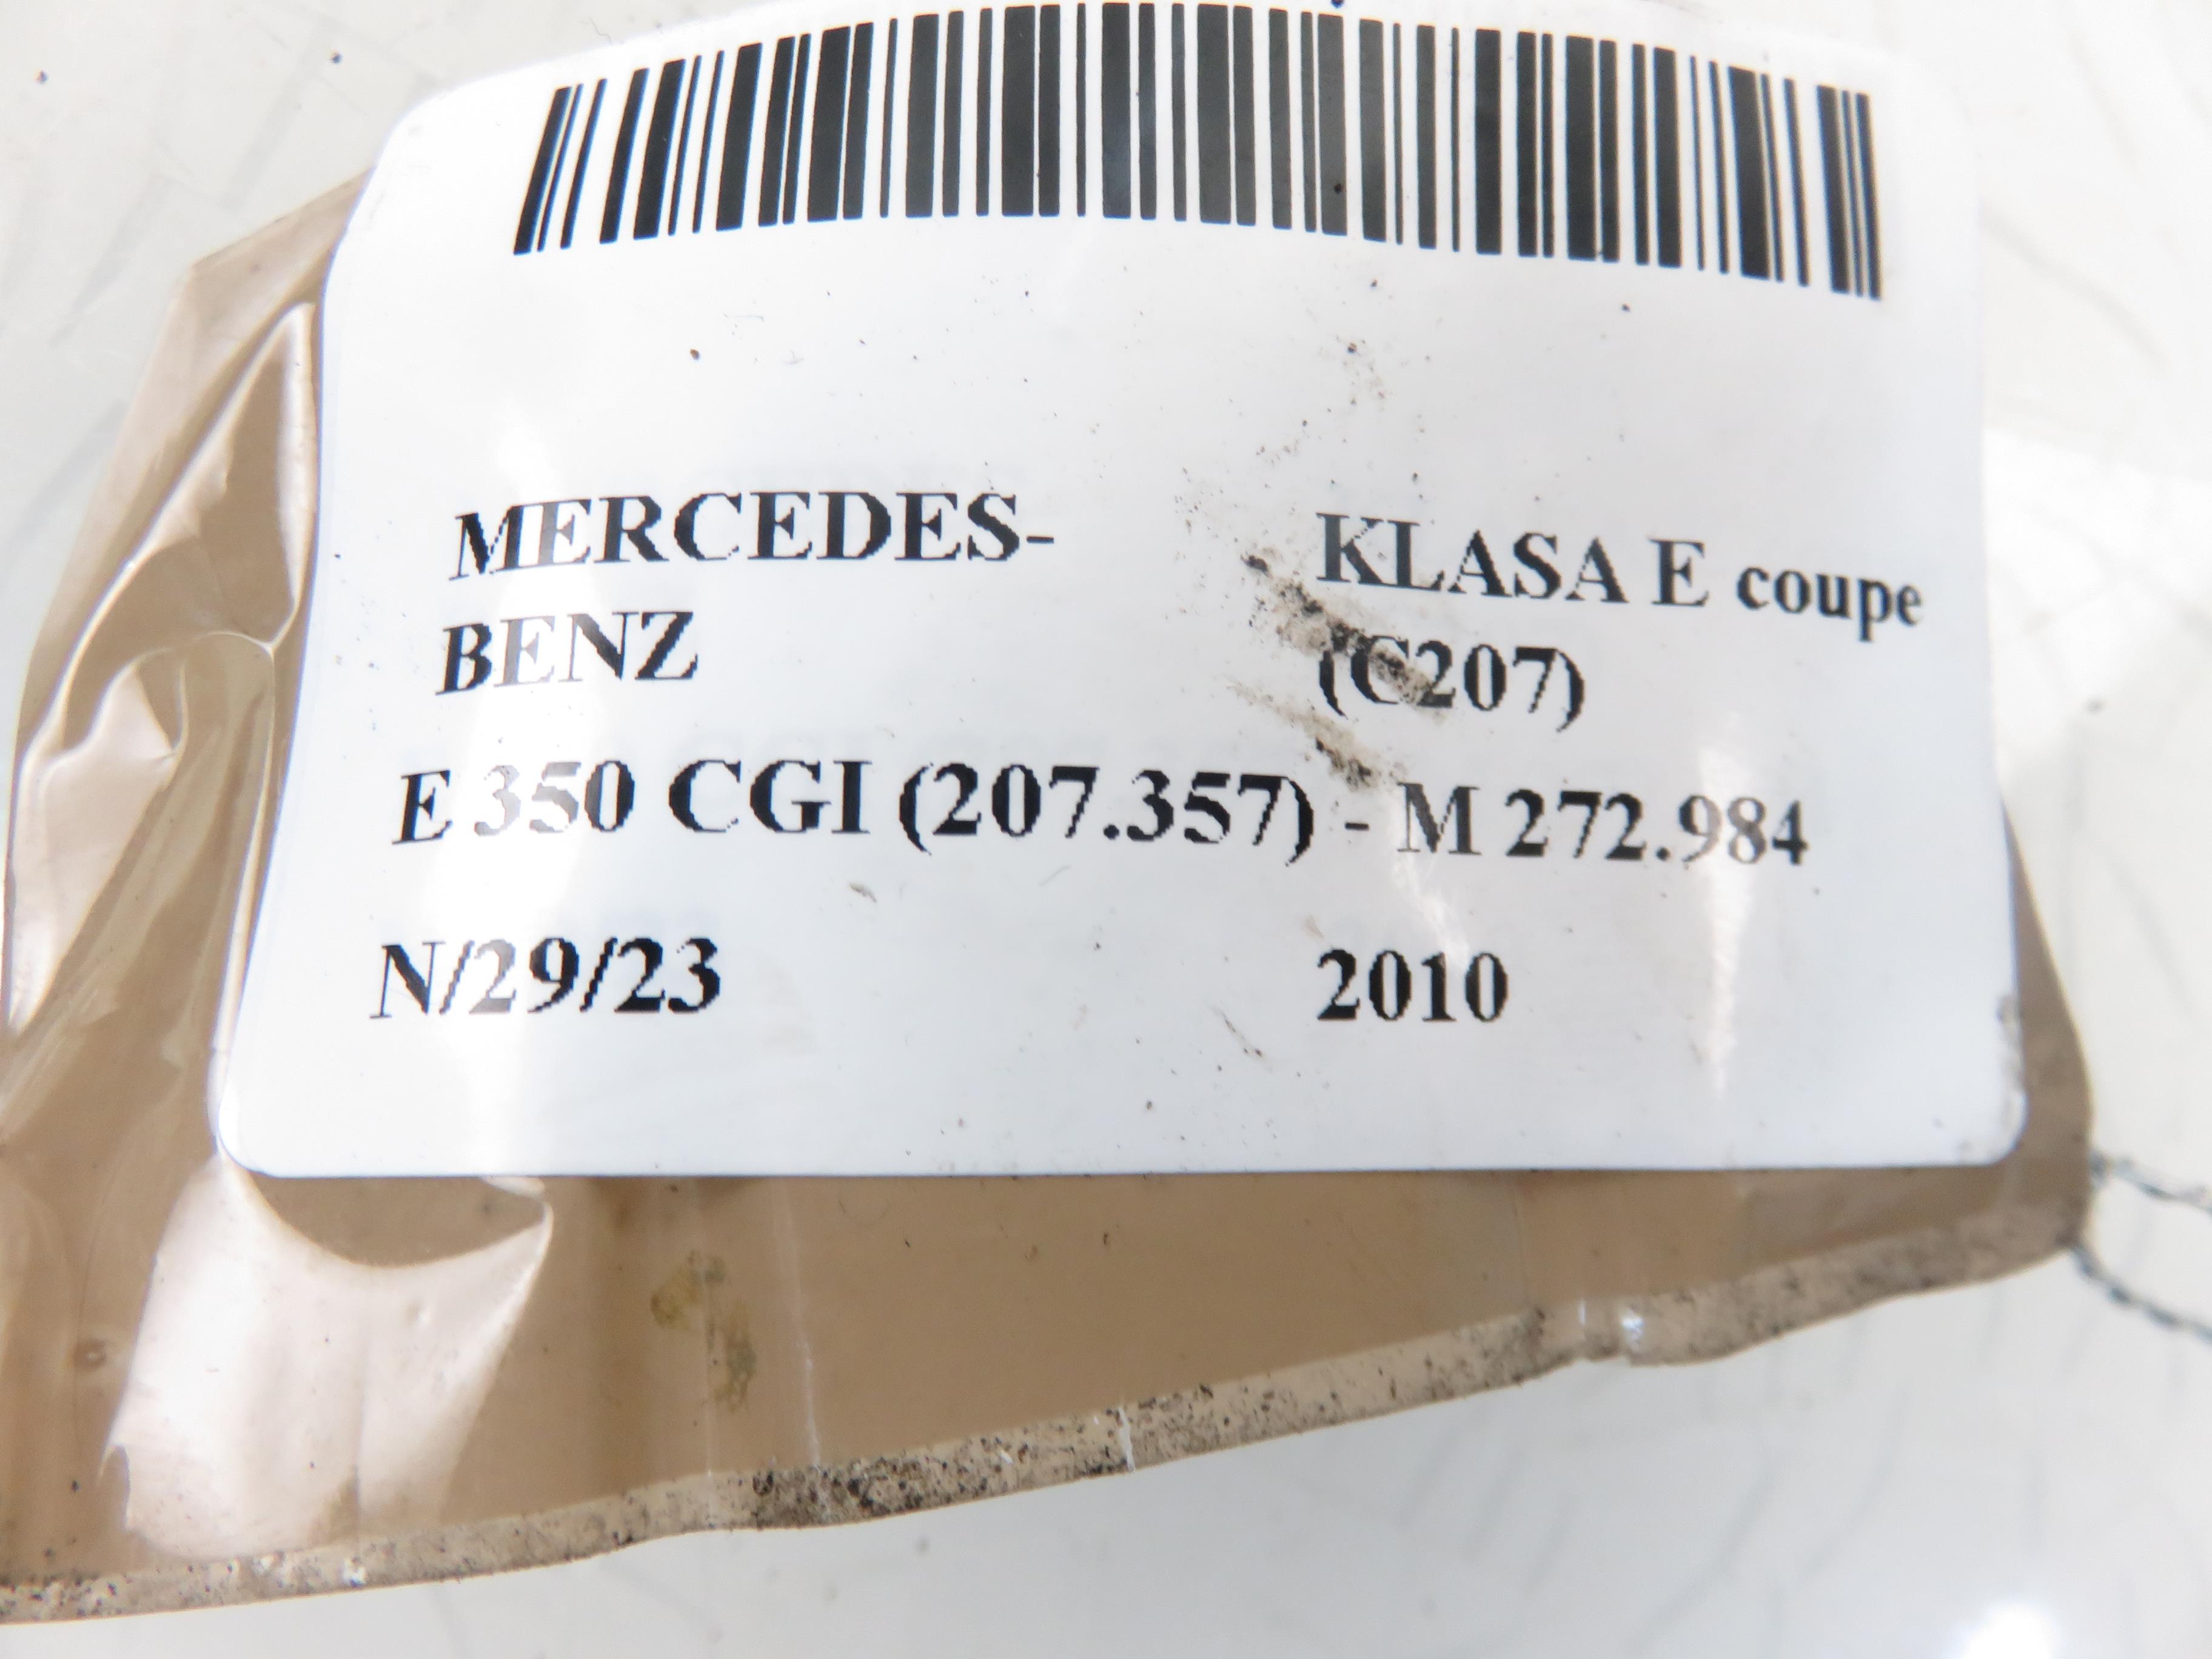 MERCEDES-BENZ E-Class W212/S212/C207/A207 (2009-2016) PDC Parking Sensor 2125420018, 0263003616 20839634